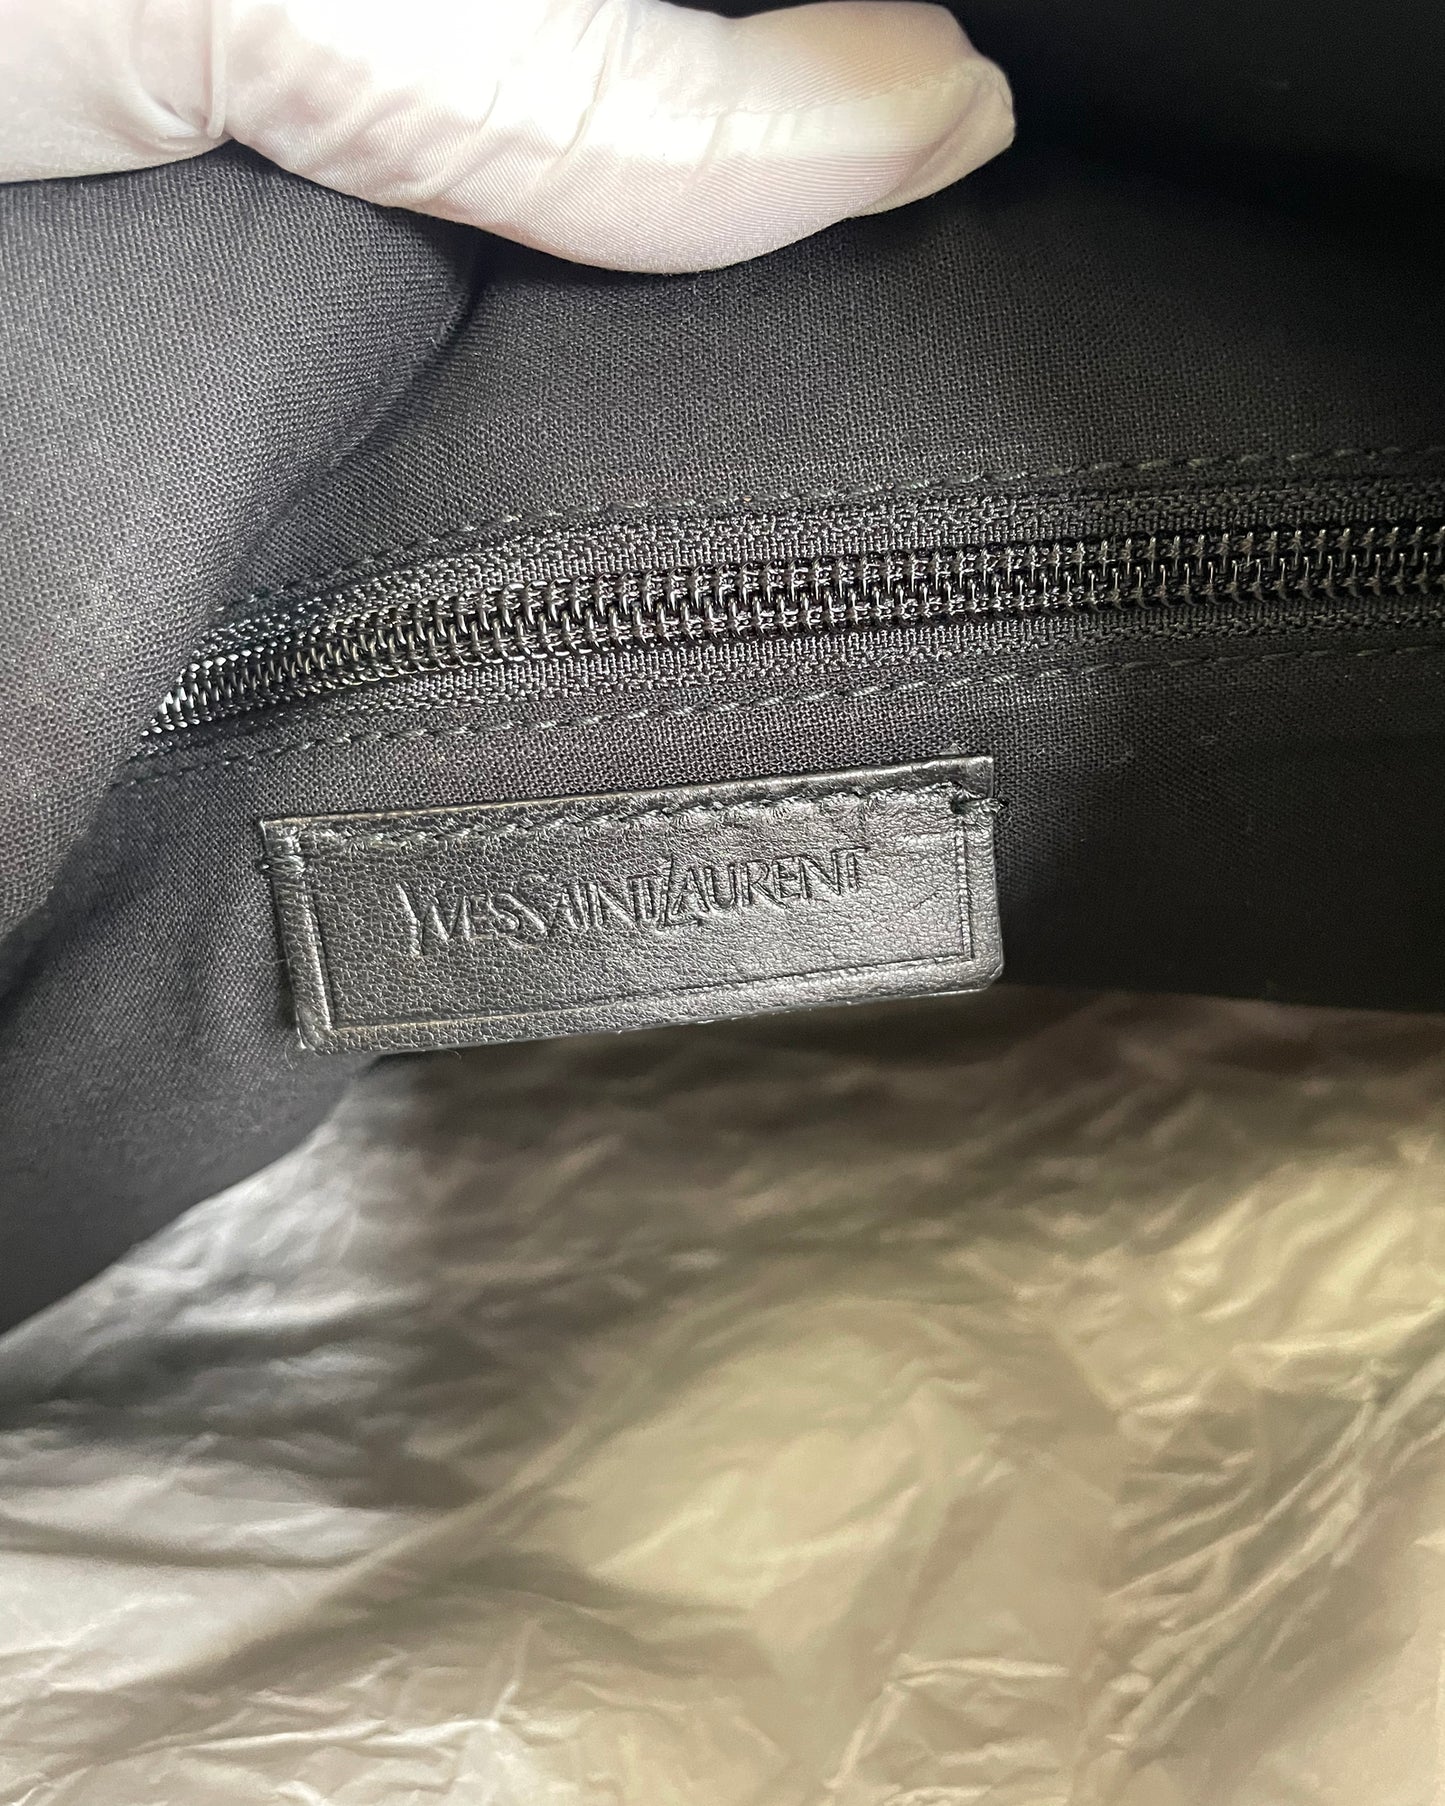 Sac Yves Saint Laurent "Gruppo Ycon" en cuir et textile, couleur navy.